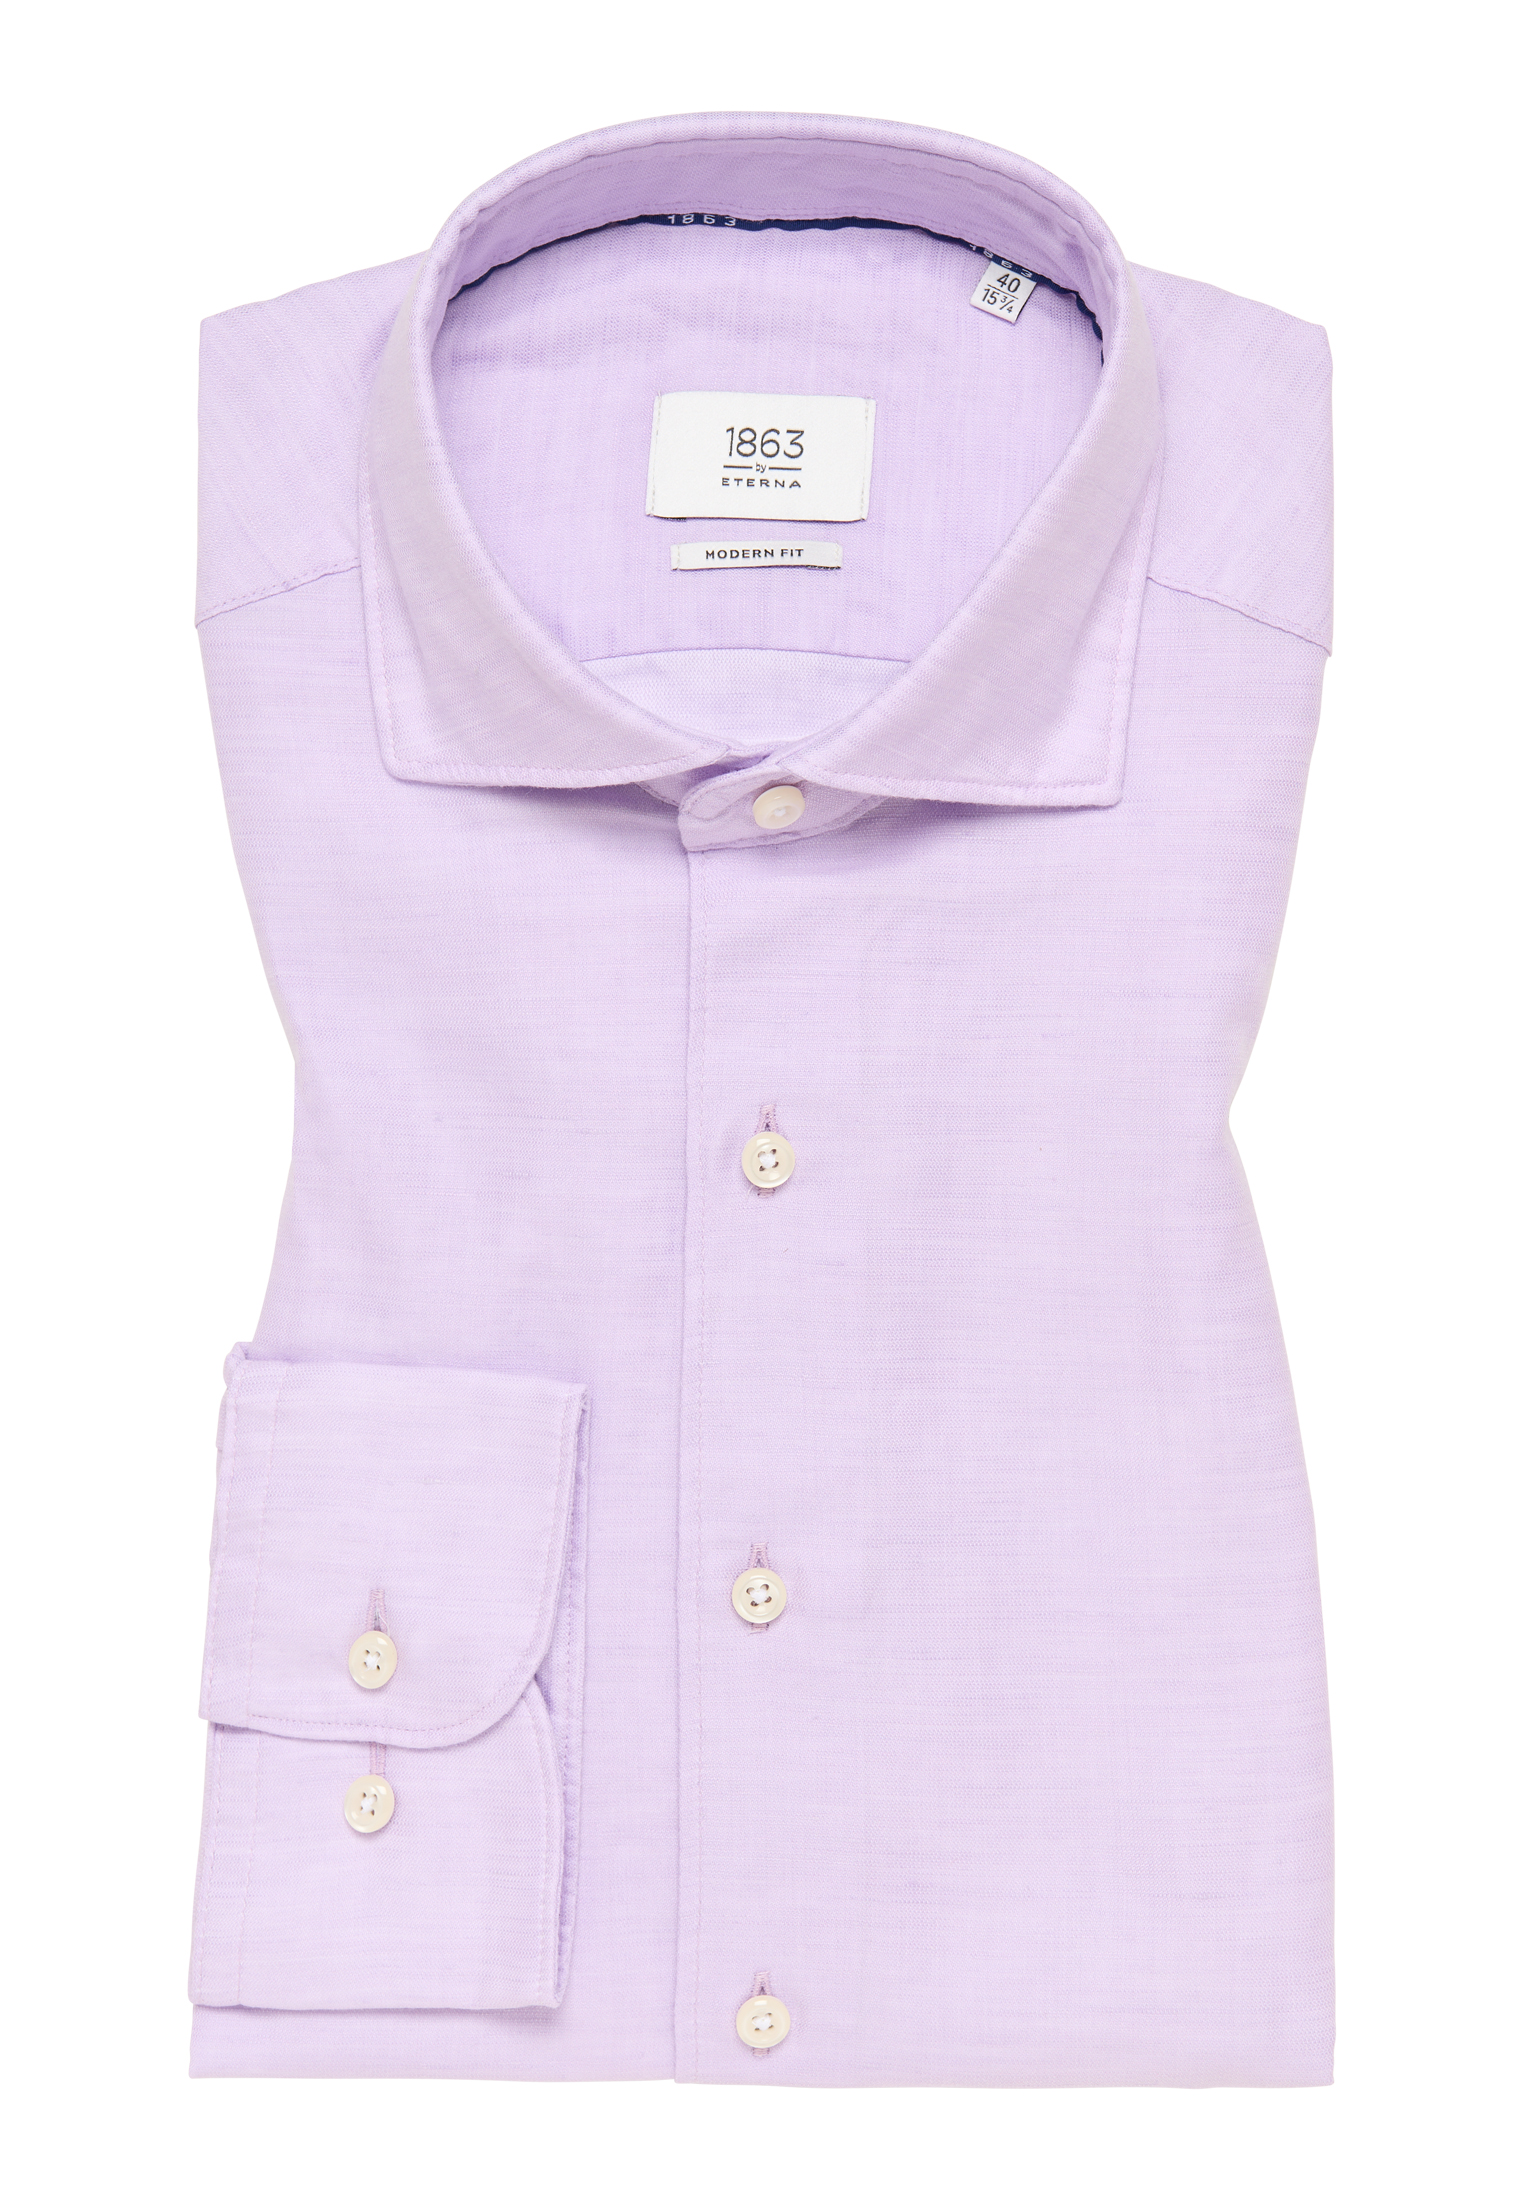 MODERN FIT Linen Shirt | in plain lavender | 46 | 1SH00629-09-11-46-1/1 lavender | sleeve long